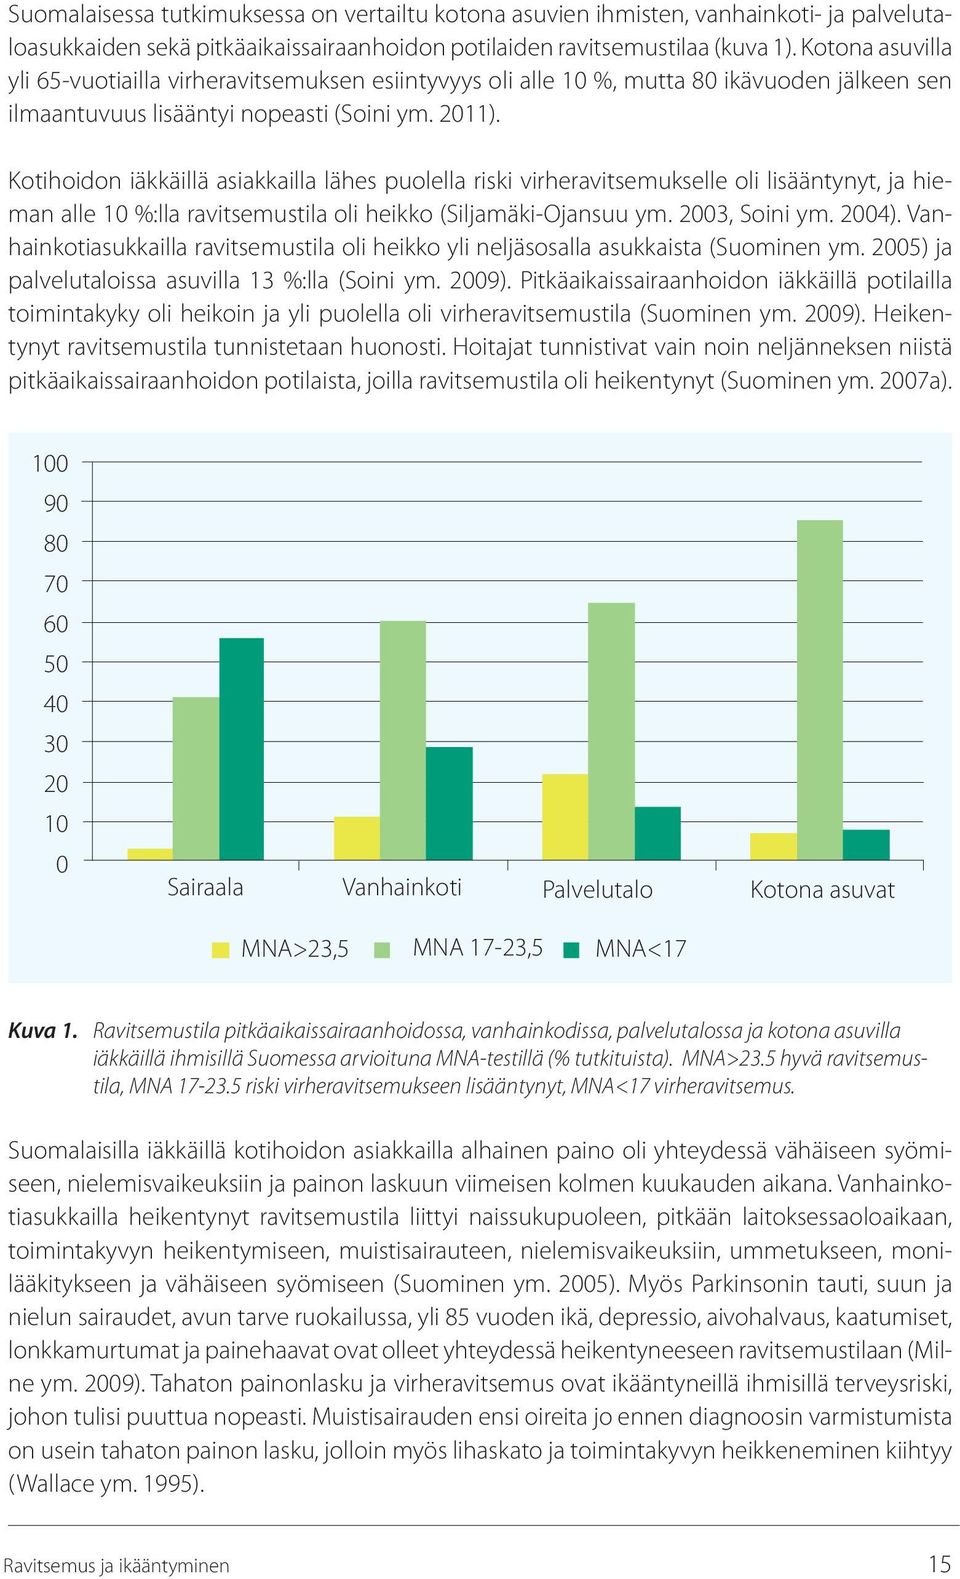 Kotihoidon iäkkäillä asiakkailla lähes puolella riski virheravitsemukselle oli lisääntynyt, ja hieman alle 10 %:lla ravitsemustila oli heikko (Siljamäki-Ojansuu ym. 2003, Soini ym. 2004).